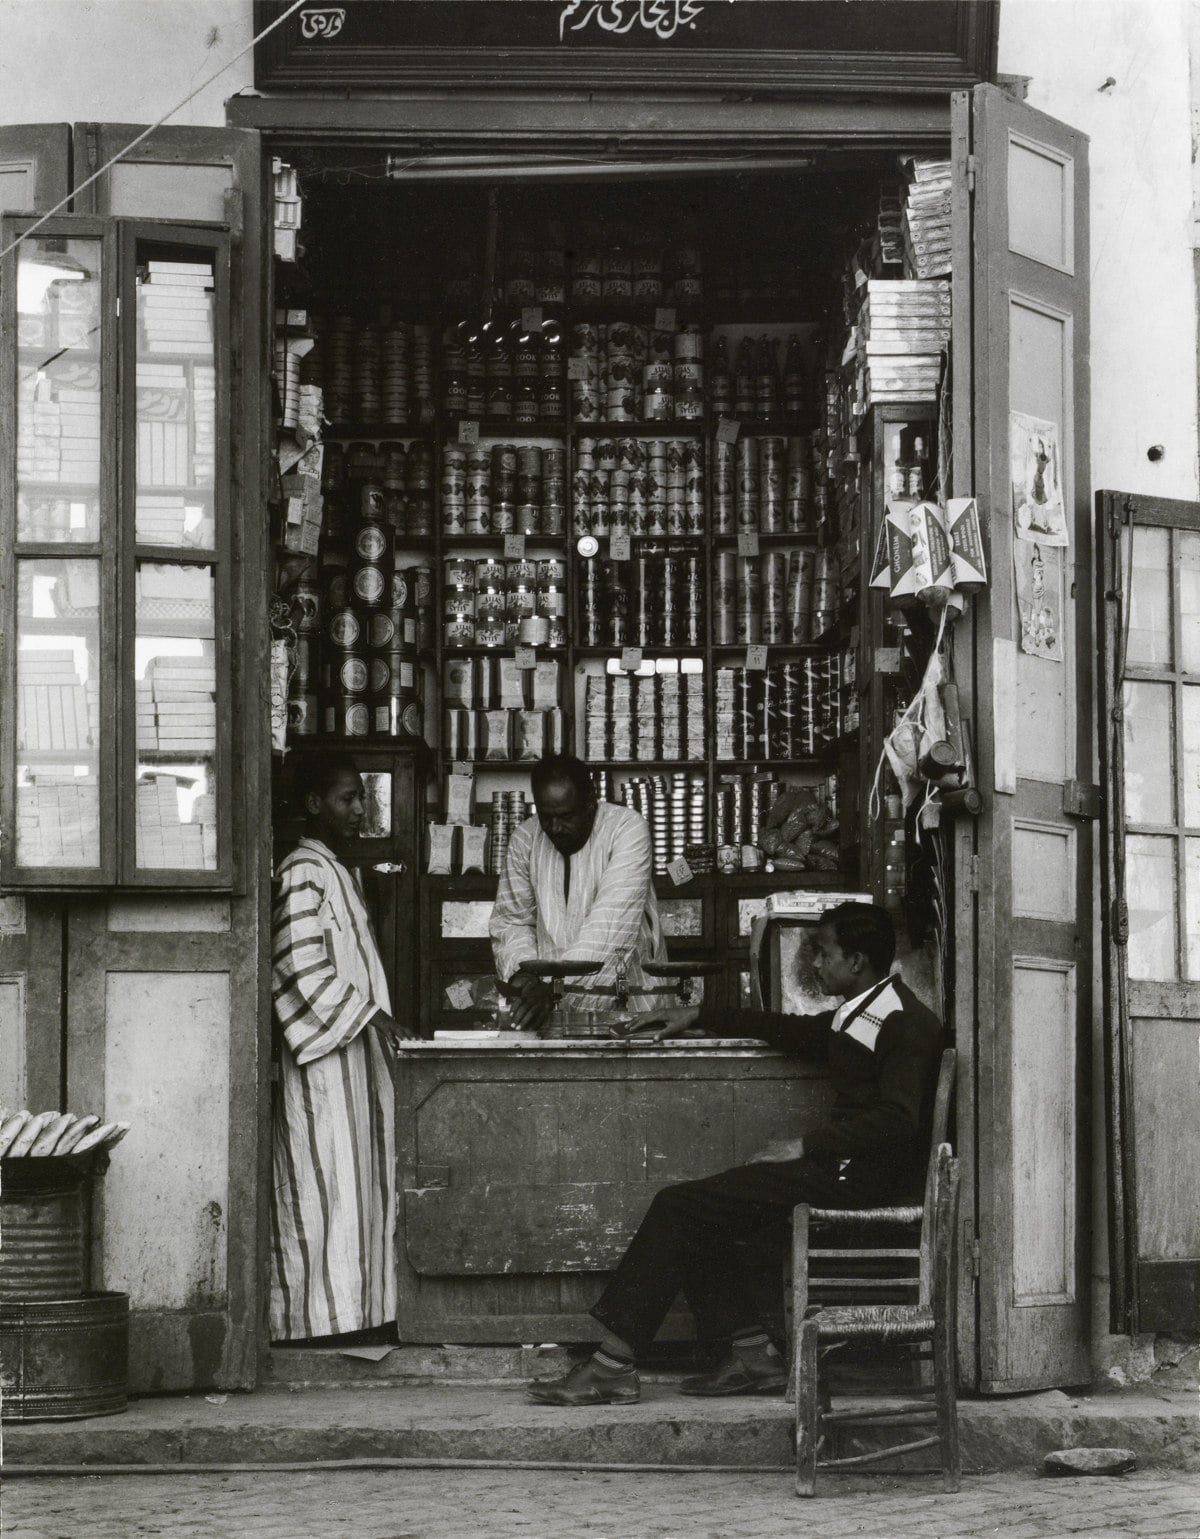 Shop, Aswan, Egypt [Tienda, Asuán, Egipto] © Aperture Foundation, Inc., Paul Strand Archive © COLECCIONES Fundación MAPFRE